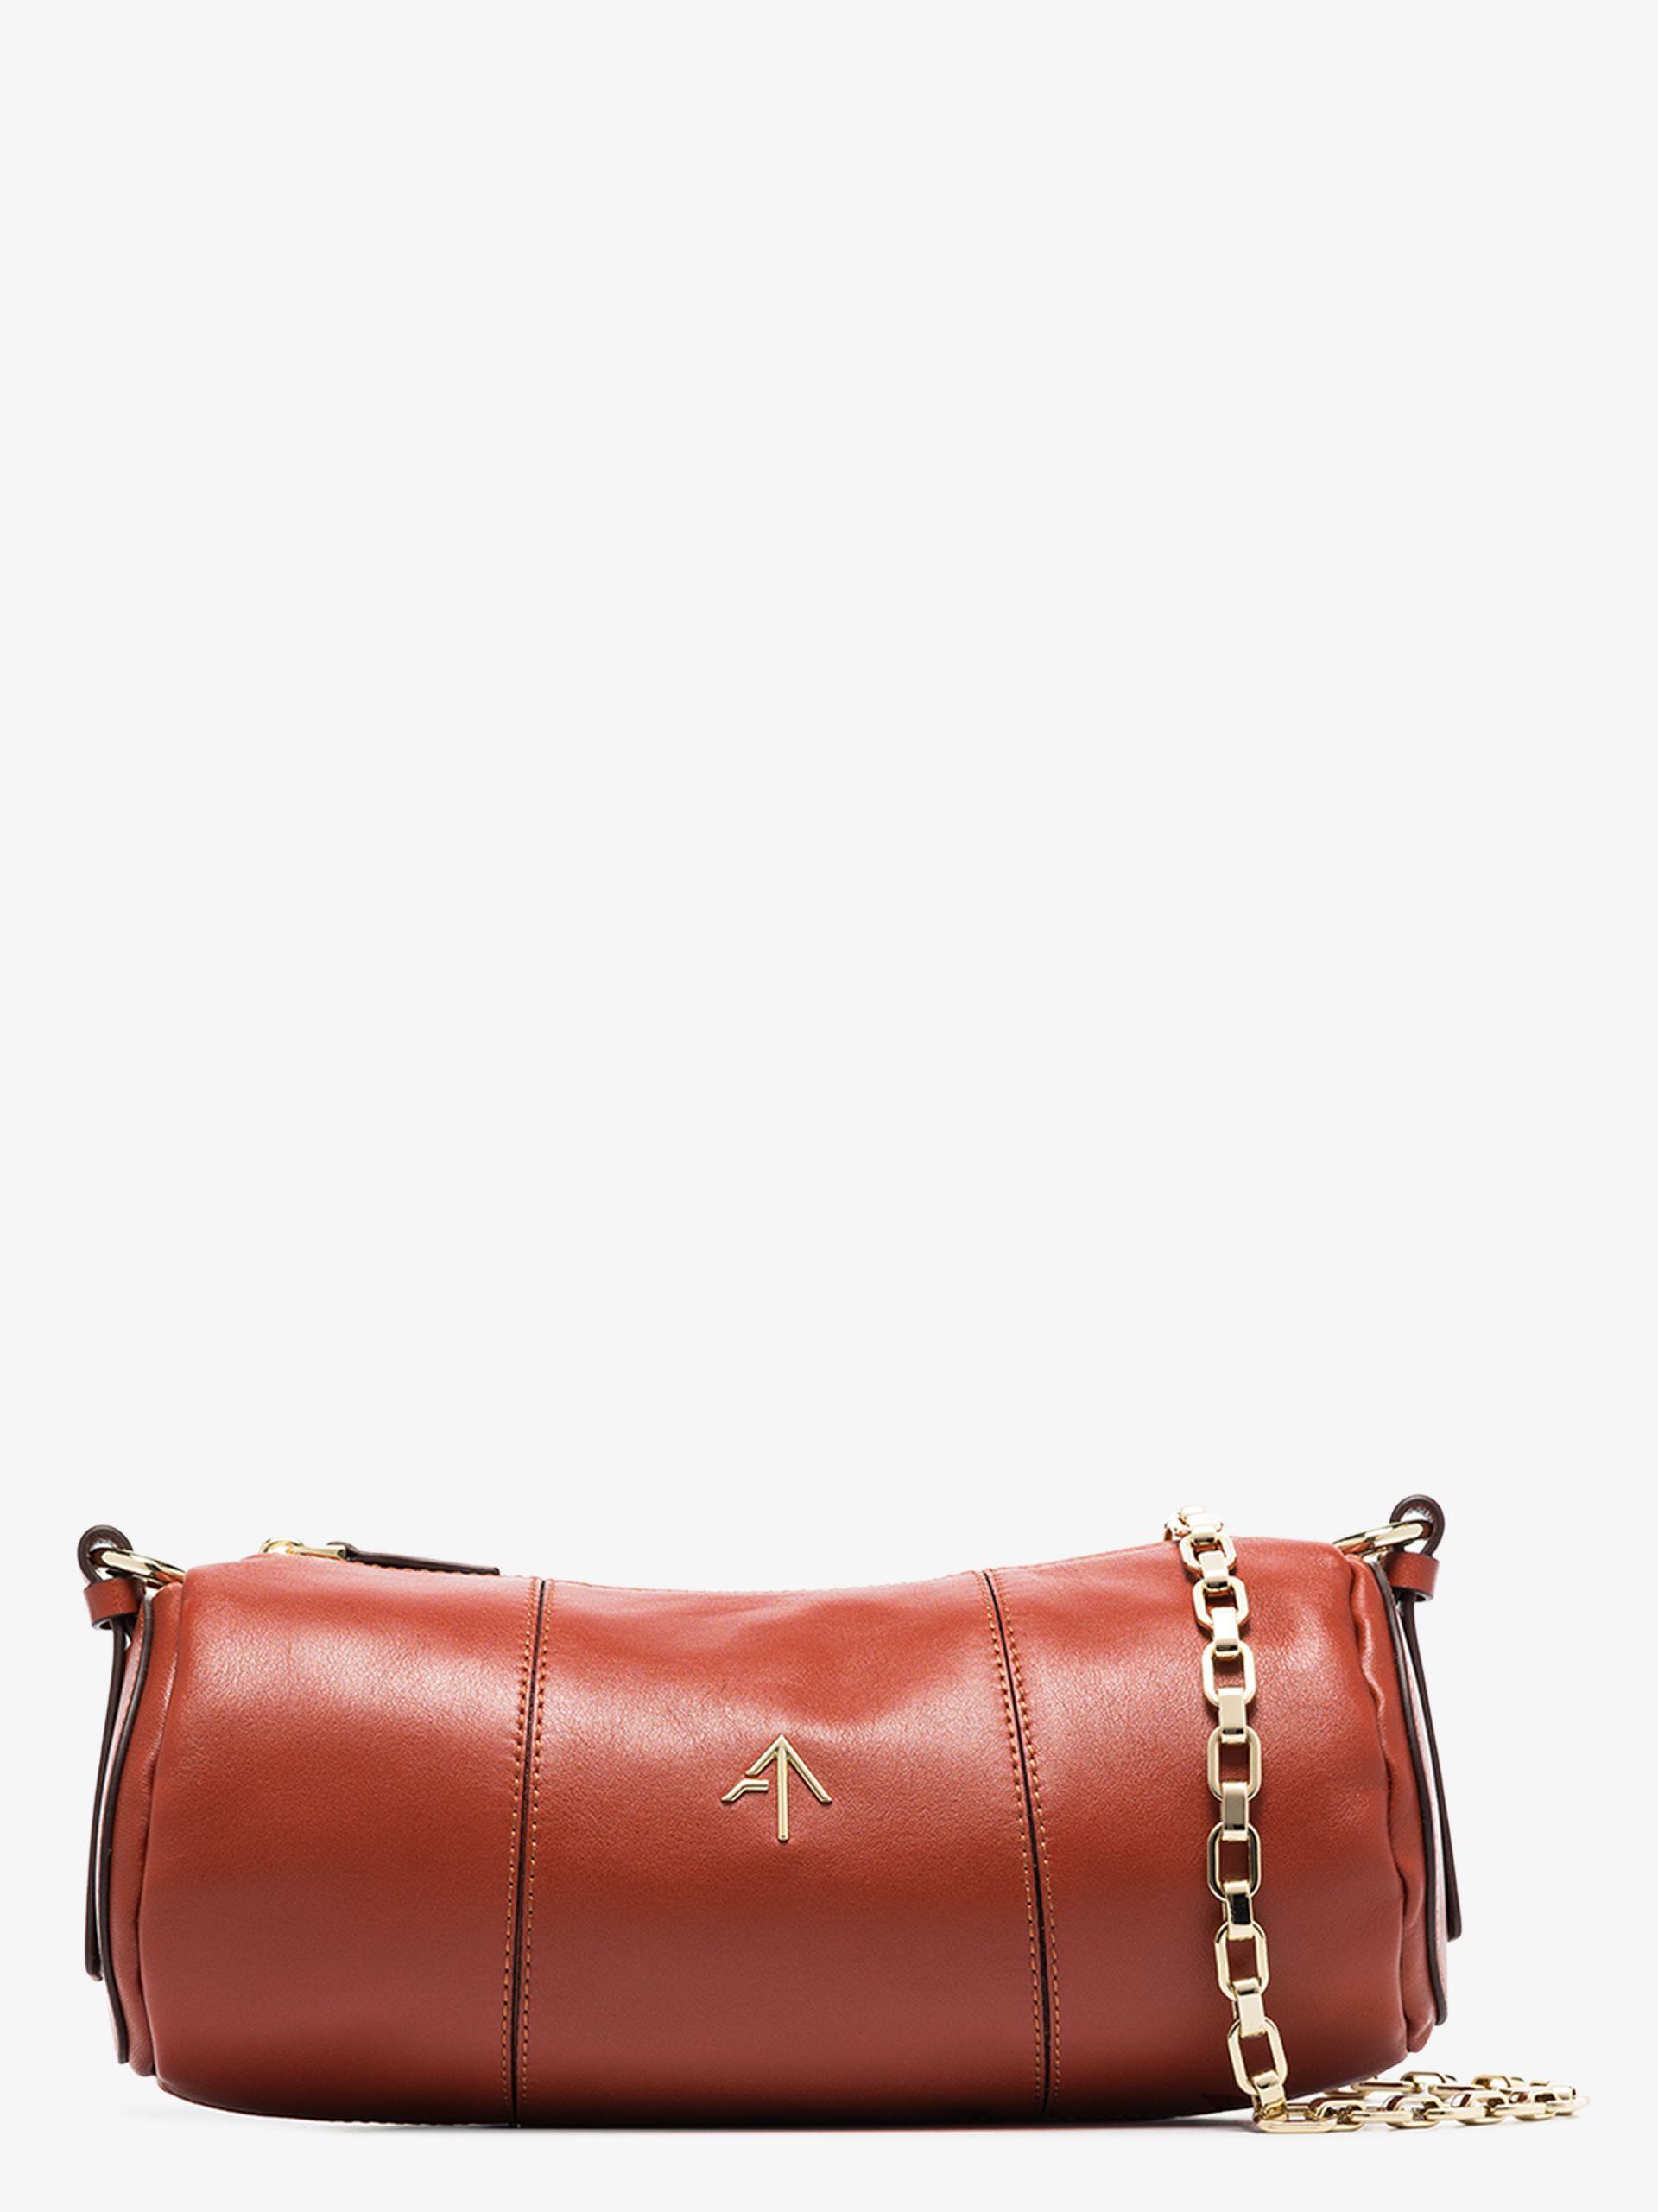 MANU Atelier Leather Cylinder Shoulder Bag in Red - Save 45% - Lyst